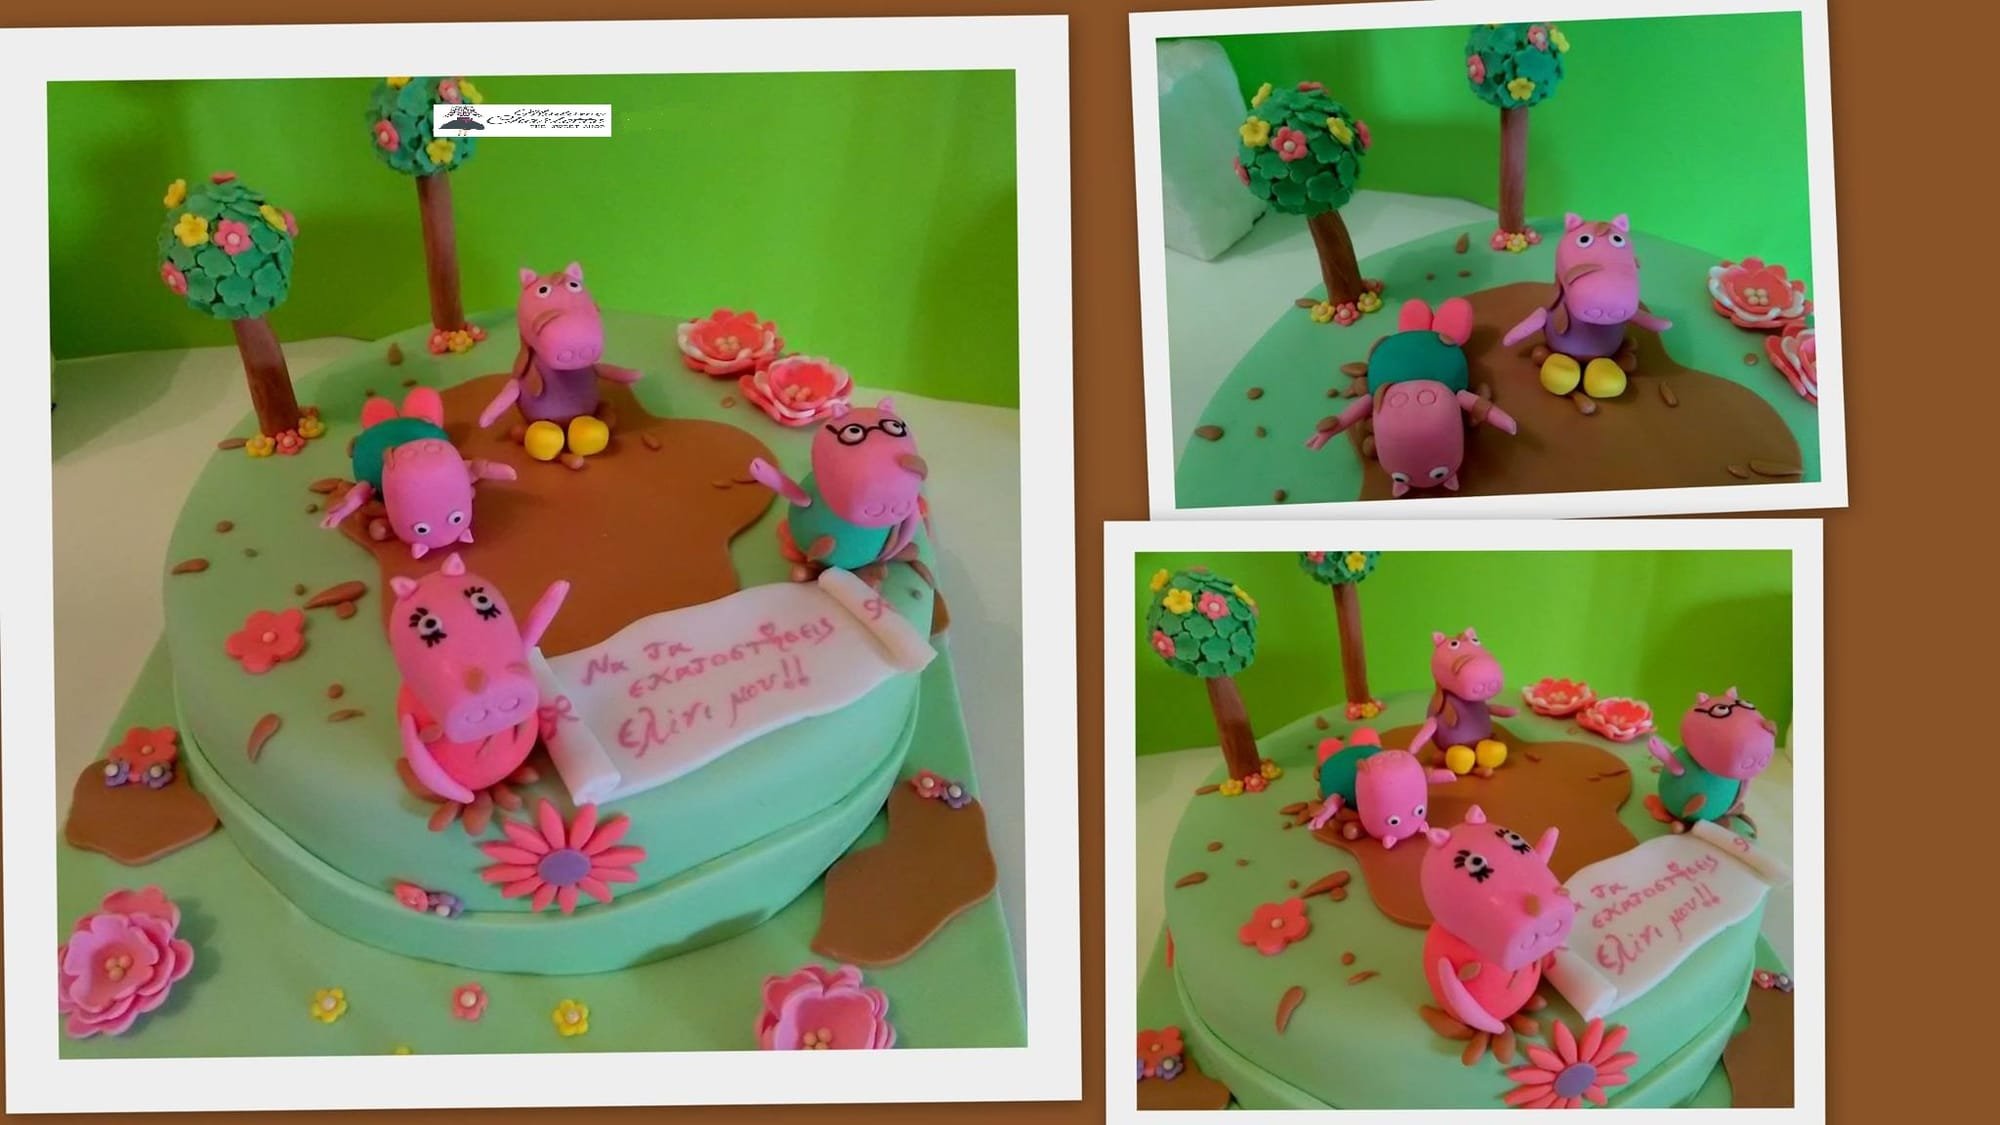 τούρτα από ζαχαρόπαστα peppa pig, Ζαχαροπλαστείο καλαμάτα madamecharlotte.gr, τούρτες  παιδικές γεννεθλίων γάμου βάπτησης παιδικές θεματικές birthday theme party cake 2d 3d confectionery patisserie kalamata